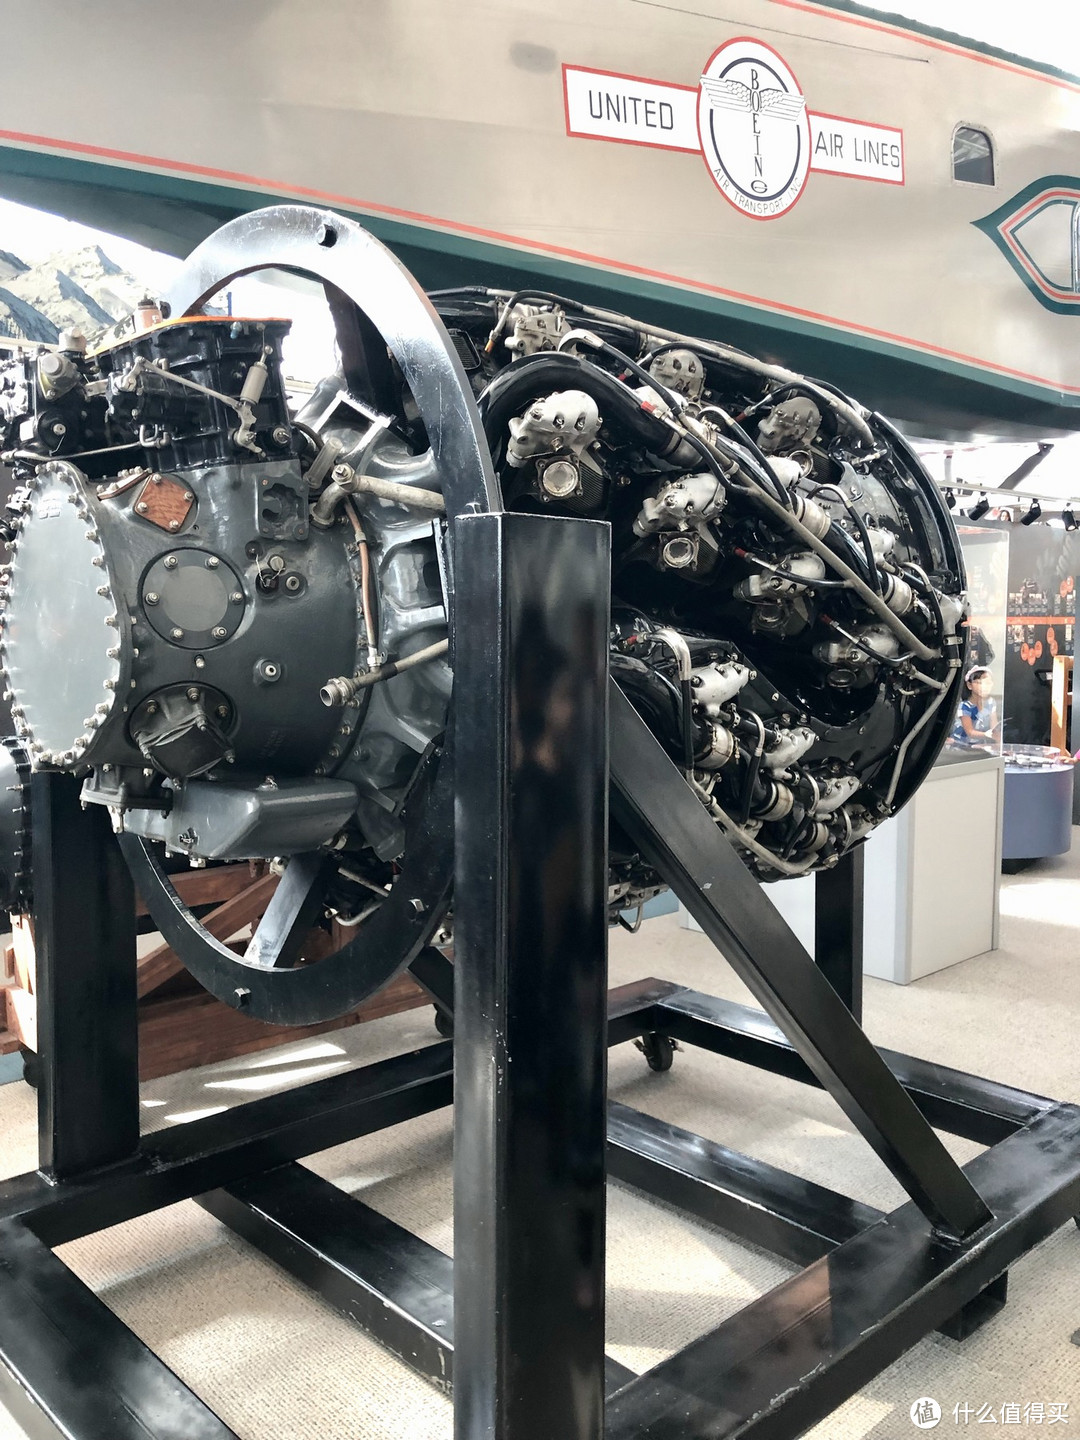 罗尔斯罗伊斯(就是劳斯莱斯)的梅林发动机,v12液冷活塞机,27升排量,也